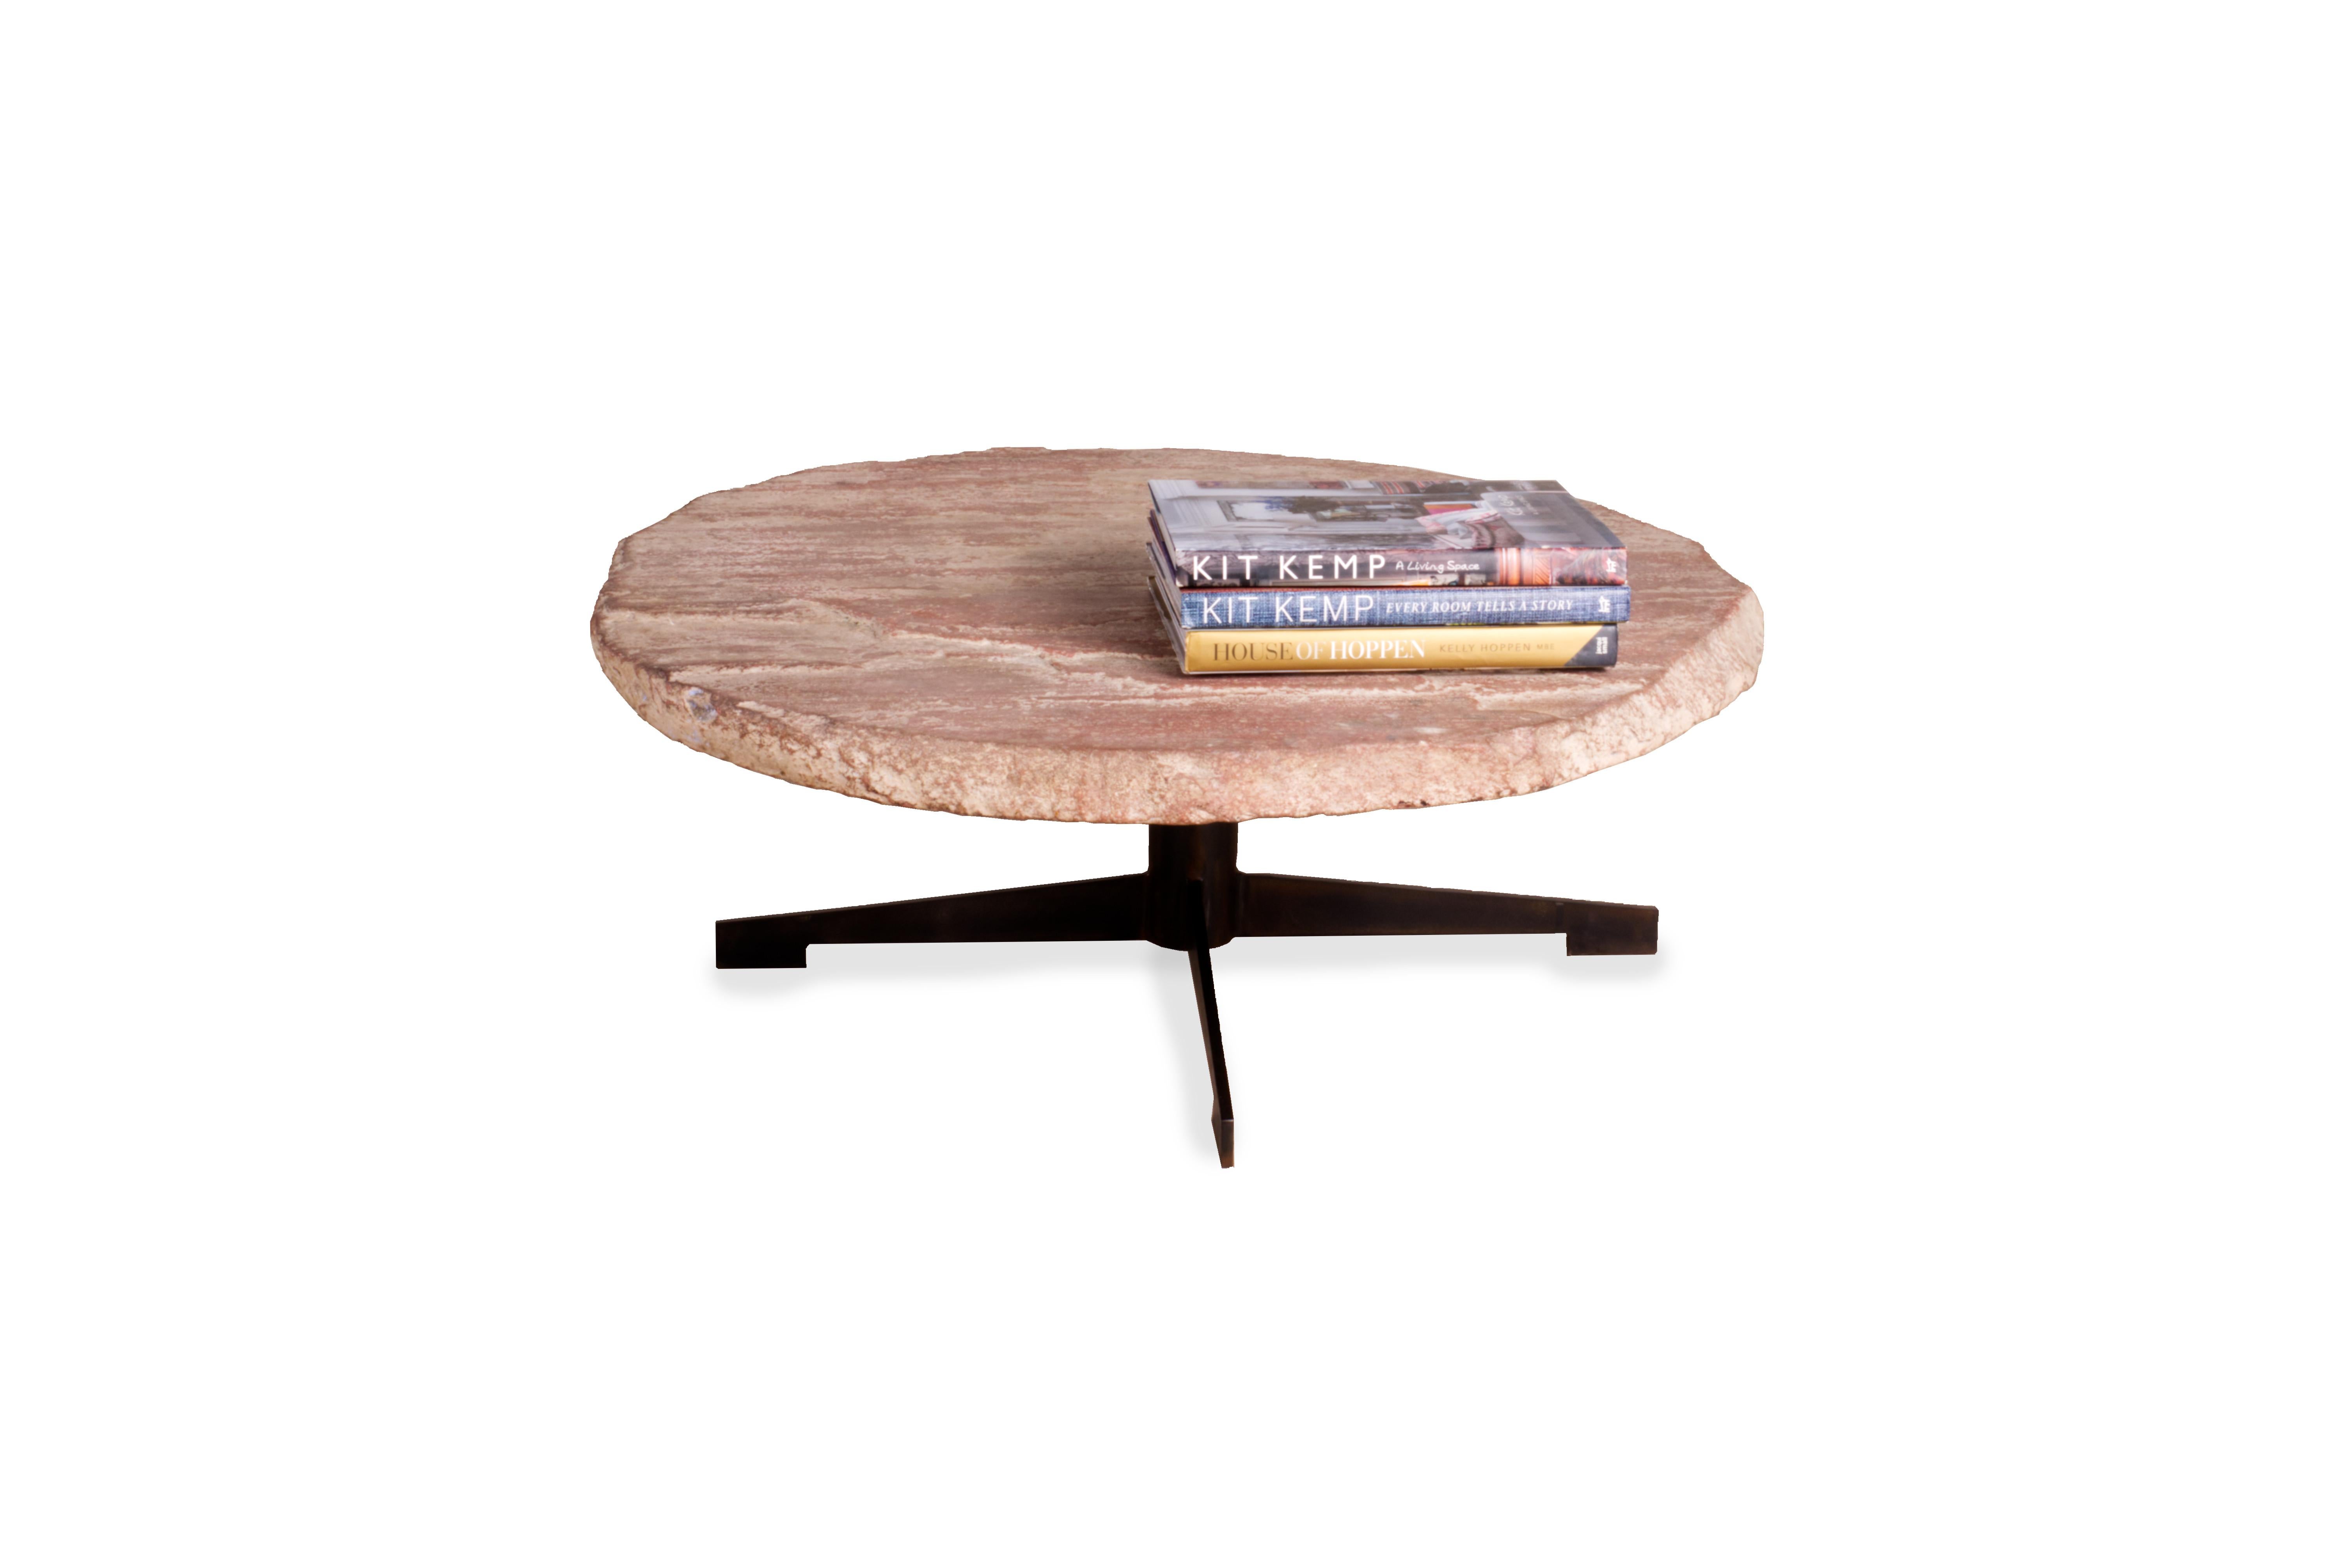 Ein atemberaubendes, modernes und kreatives Möbelstück: Diese runde Tischplatte ist aus Kalkstein gefertigt, einem natürlichen Material mit einzigartigen und organischen Details. Der Tisch steht auf einem Sockel aus ebonisiertem Stahl und ist